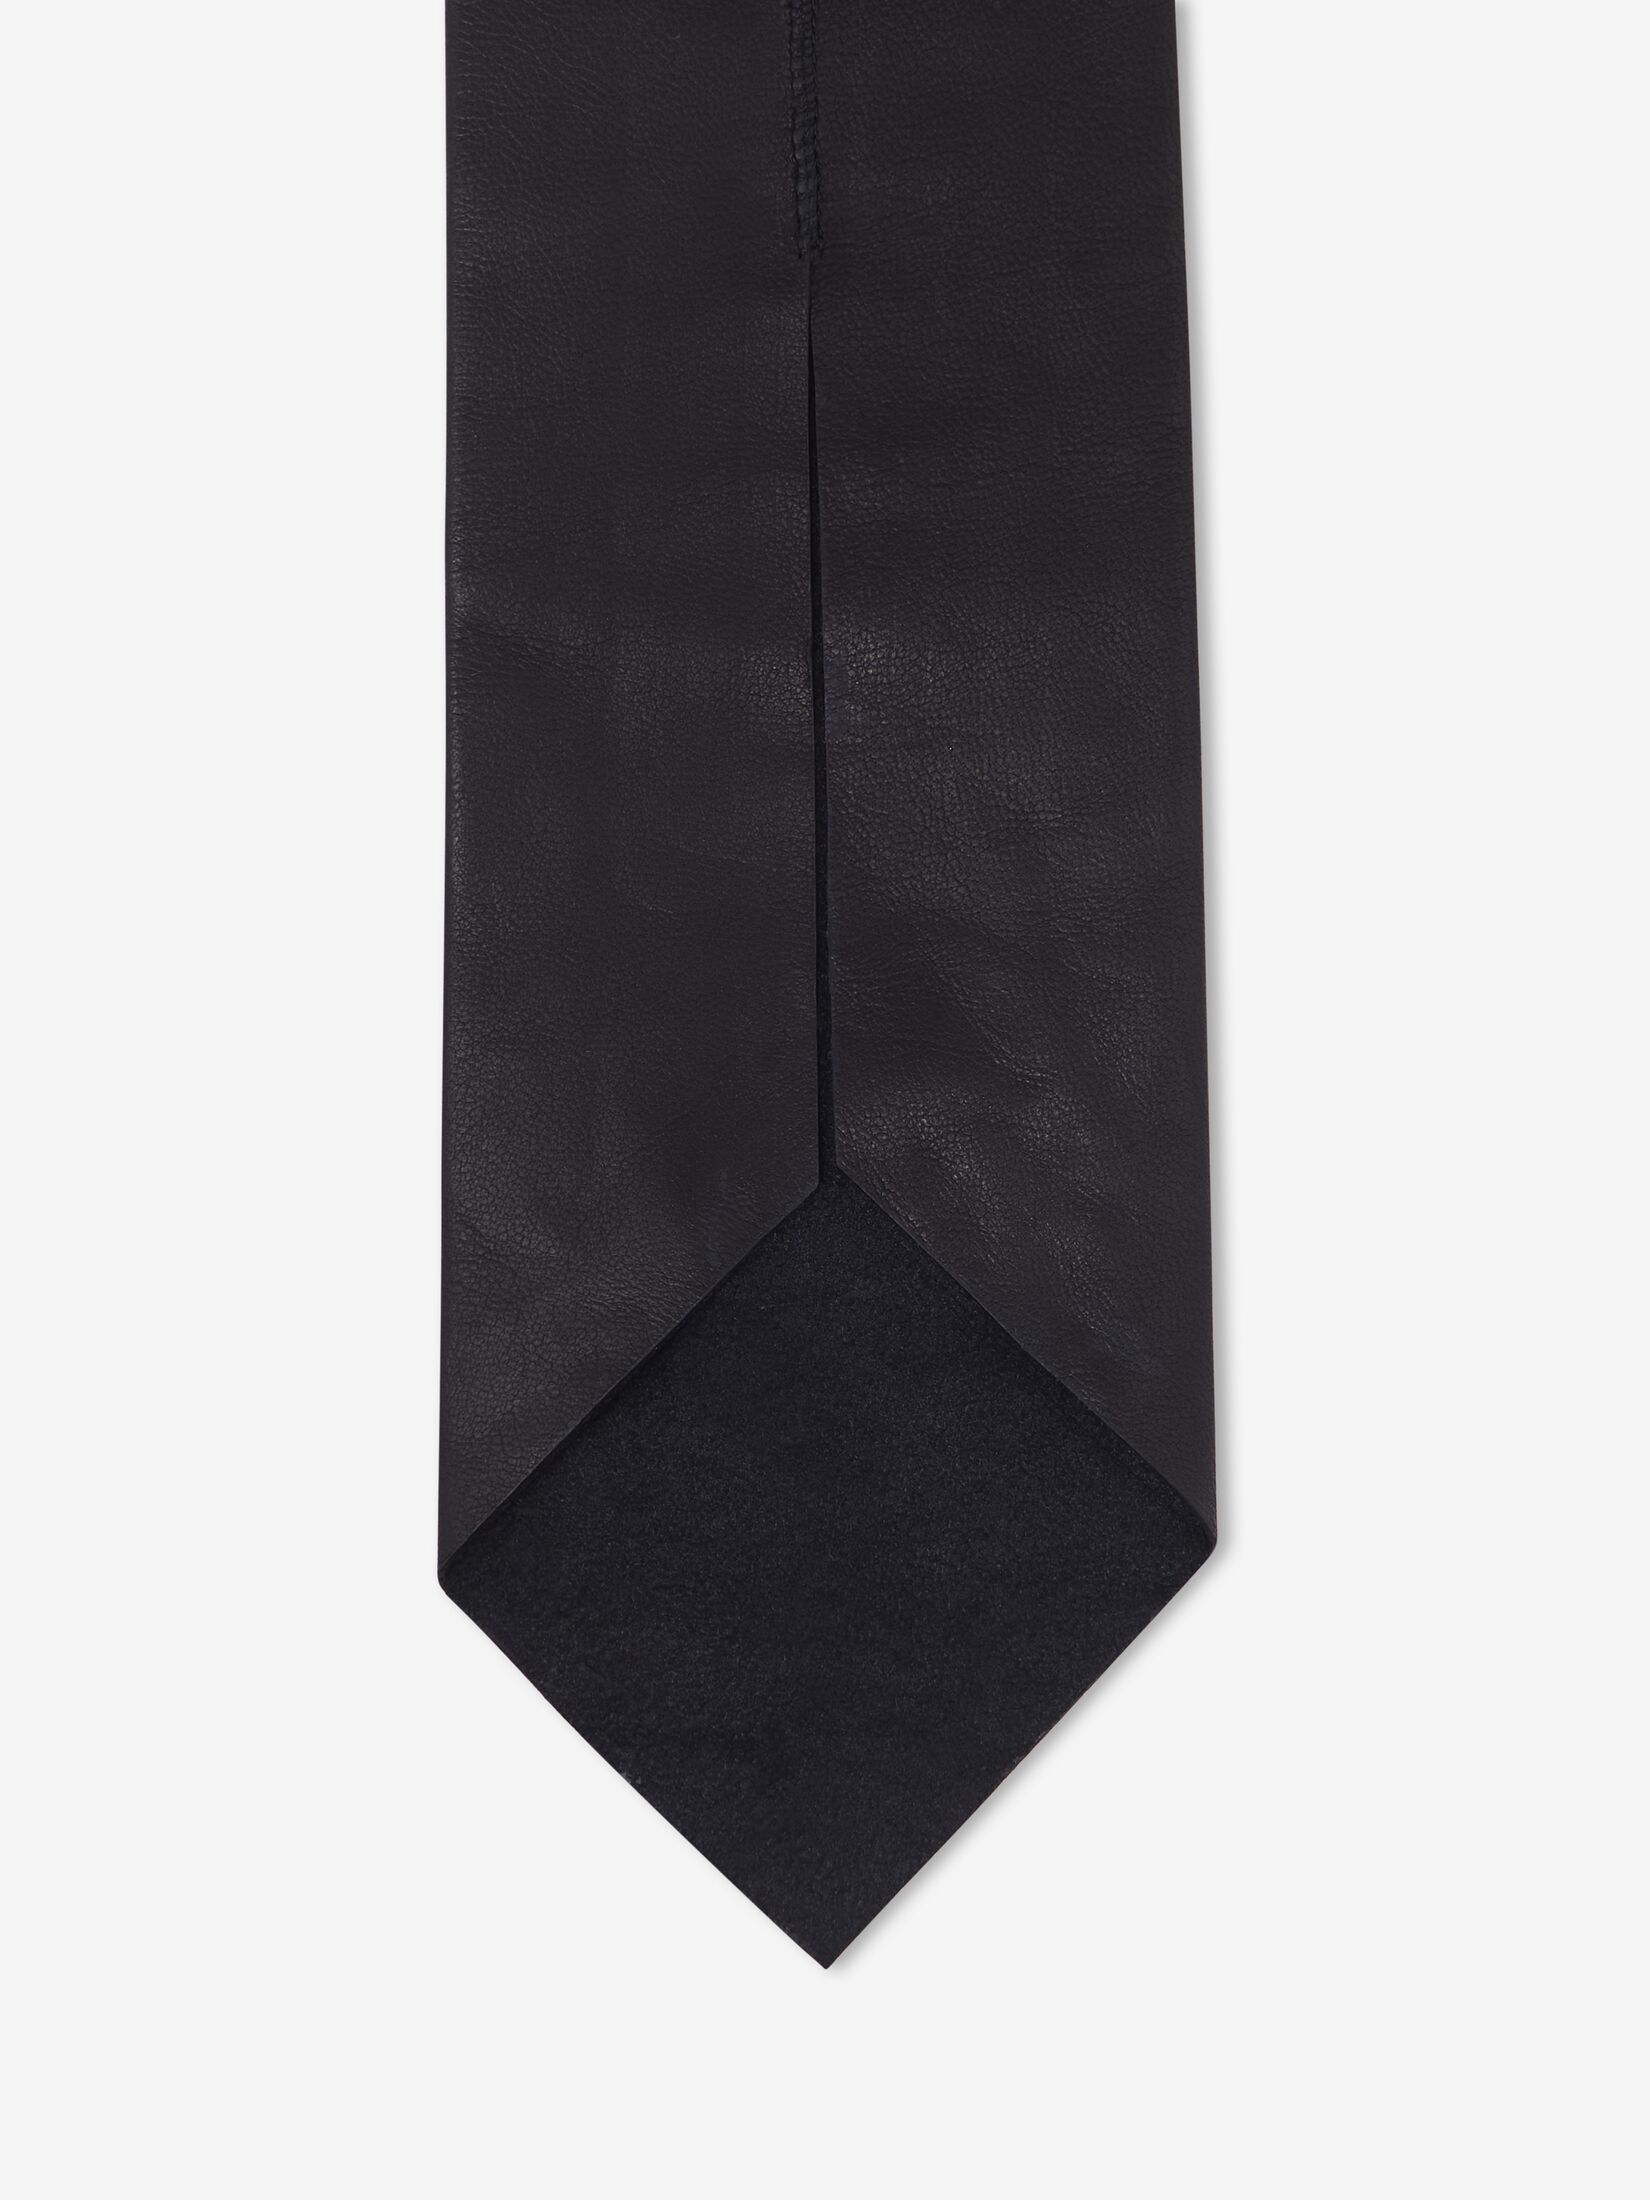 皮革领带